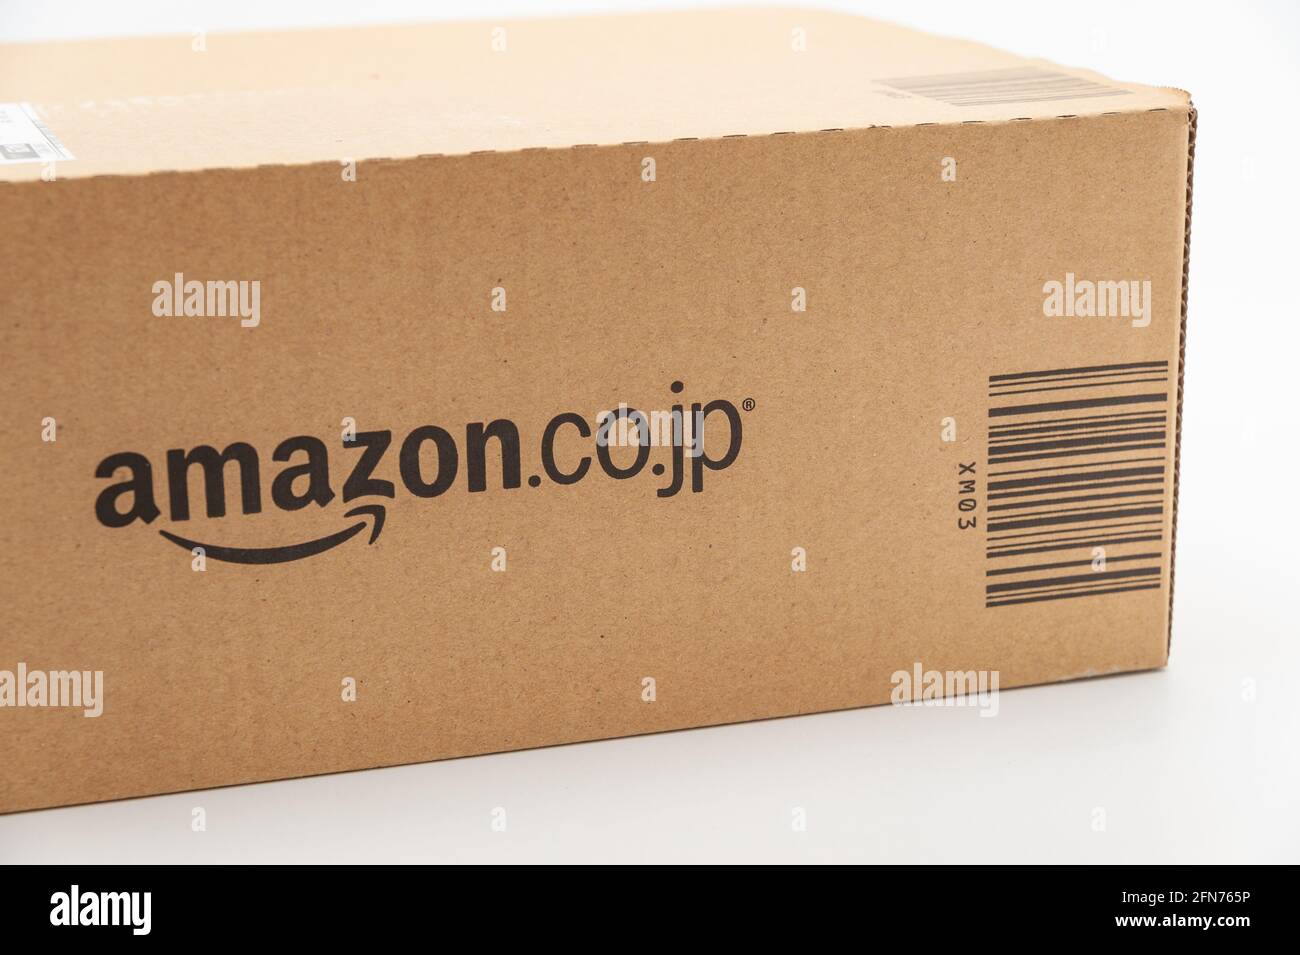 Ein Amazon Versand Karton auf weißem Hintergrund Stockfotografie - Alamy